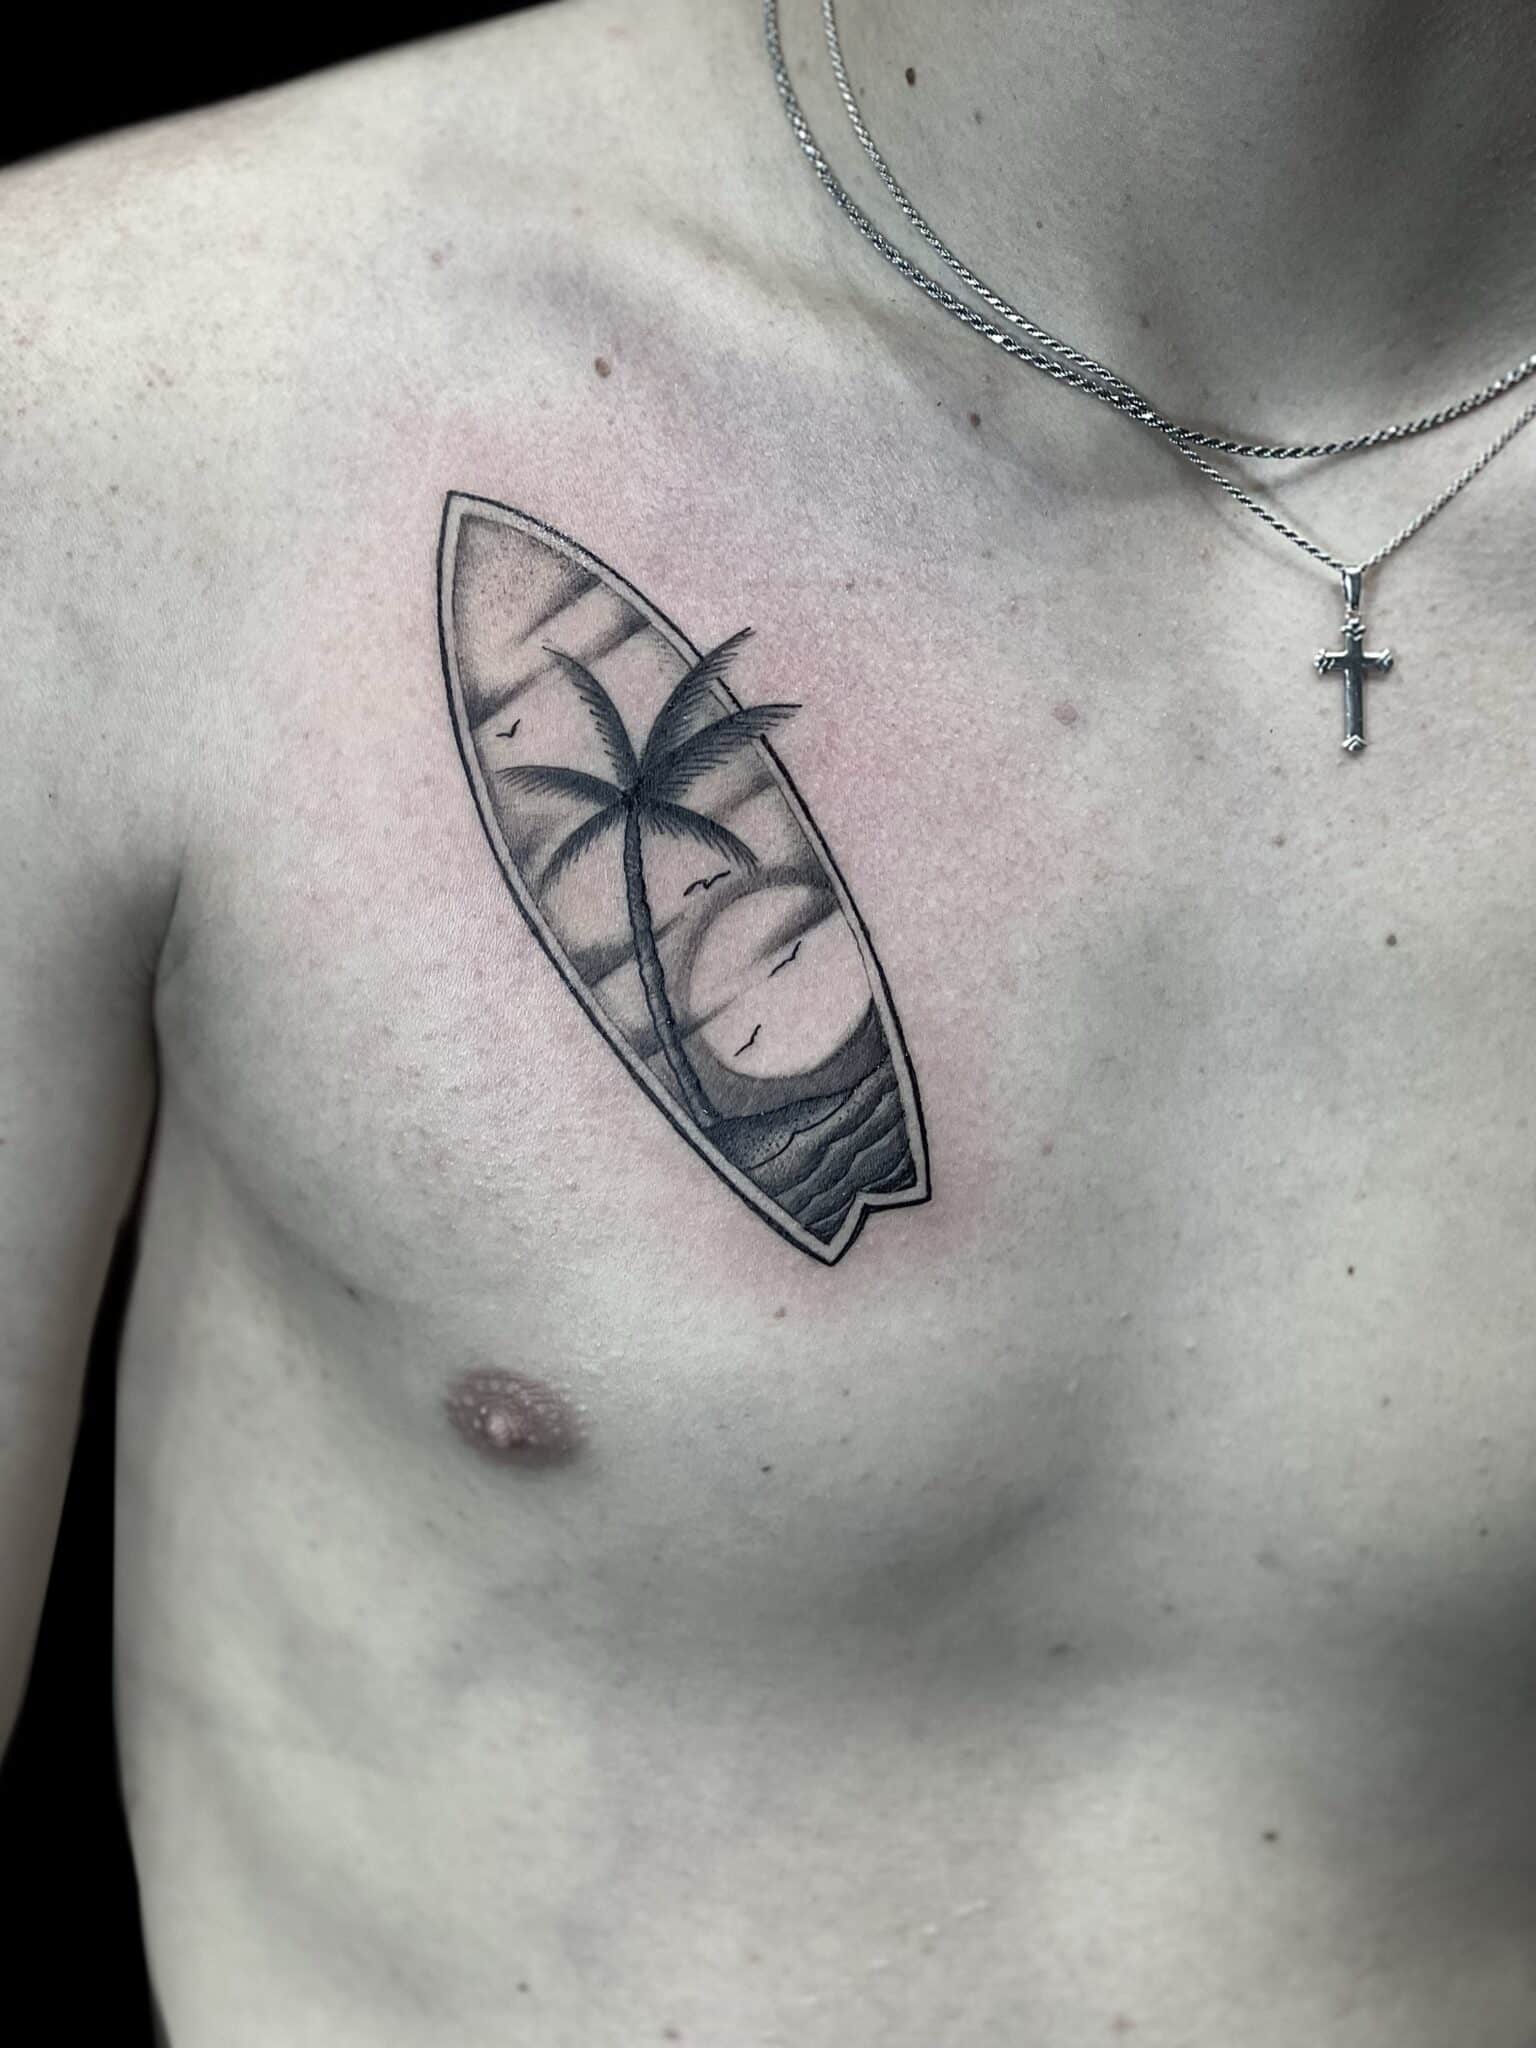 Surfer tattoo